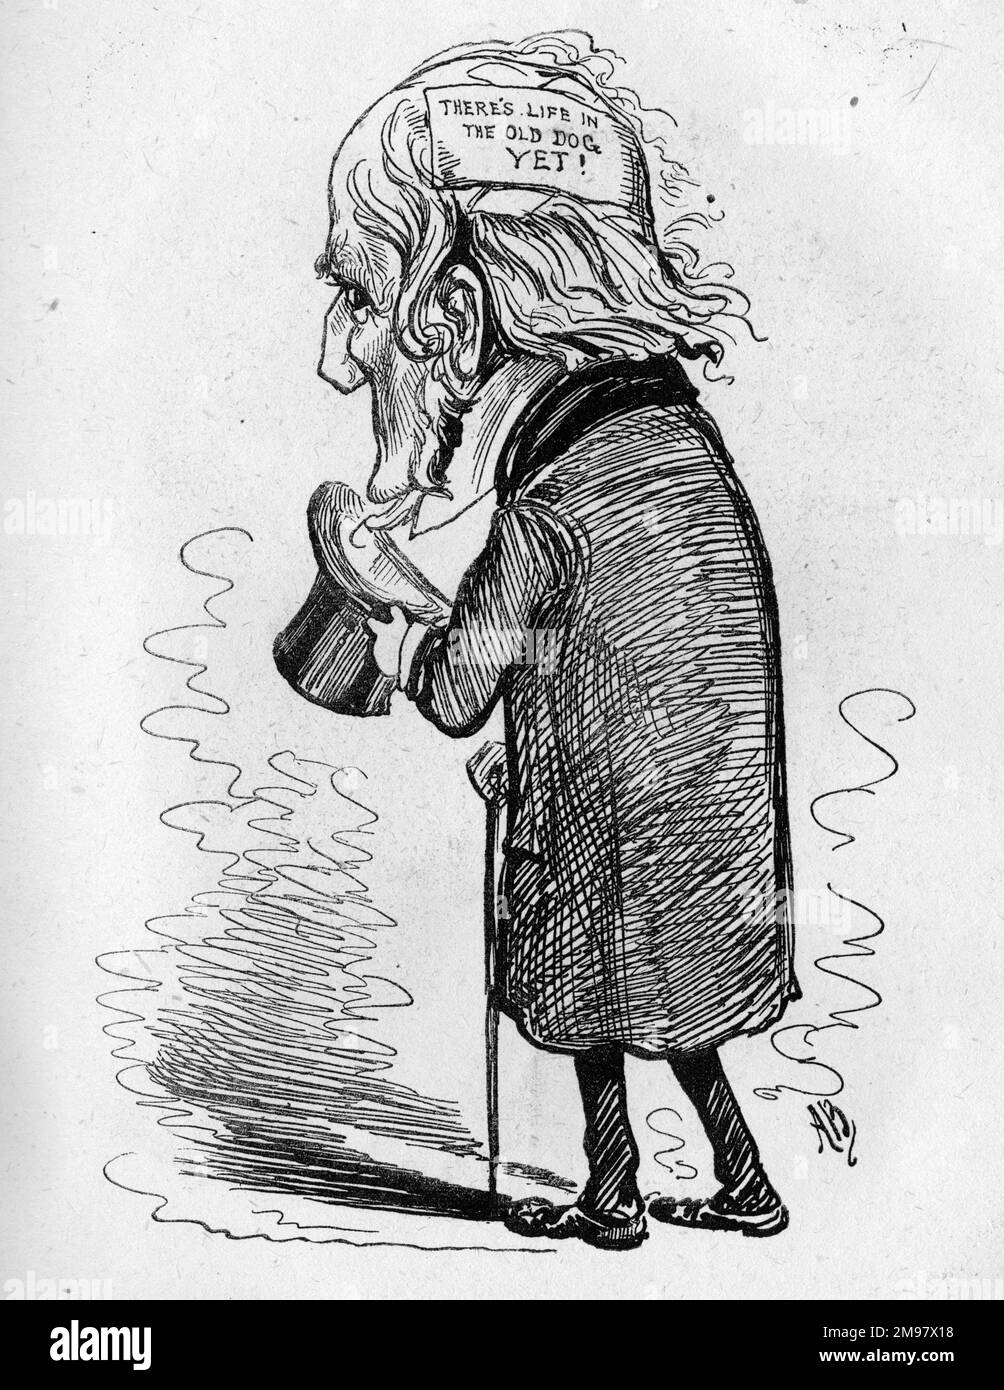 Caricature de W E Gladstone (1809-1898), Premier ministre libéral -- M. Gladstone a passé une nuit tranquille, et le projet de loi sur la coercition (qui a donné lieu à la loi irlandaise sur la coercition). Il y a encore de la vie dans le vieux chien ! Banque D'Images